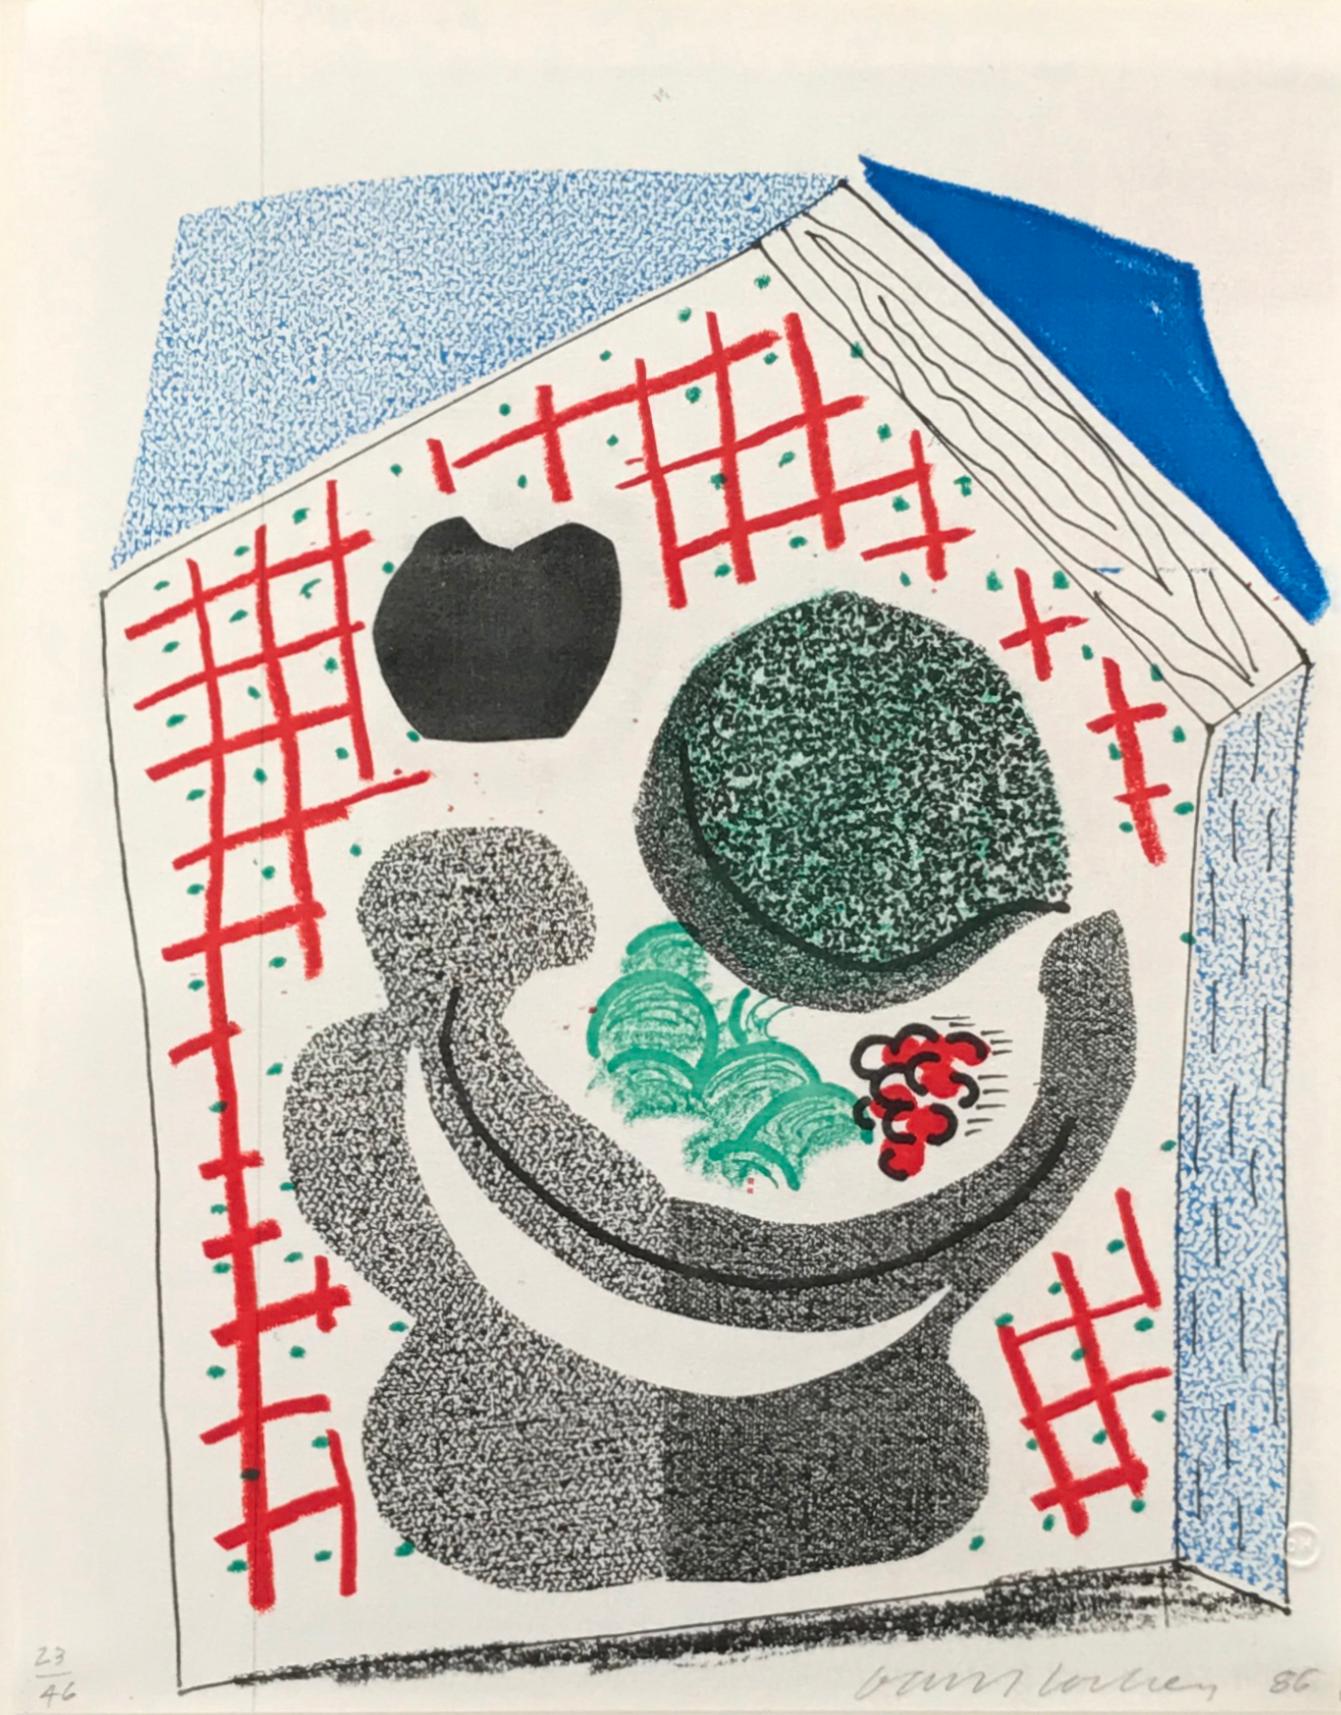 David Hockney Still-Life Print - Bowl of Fruit